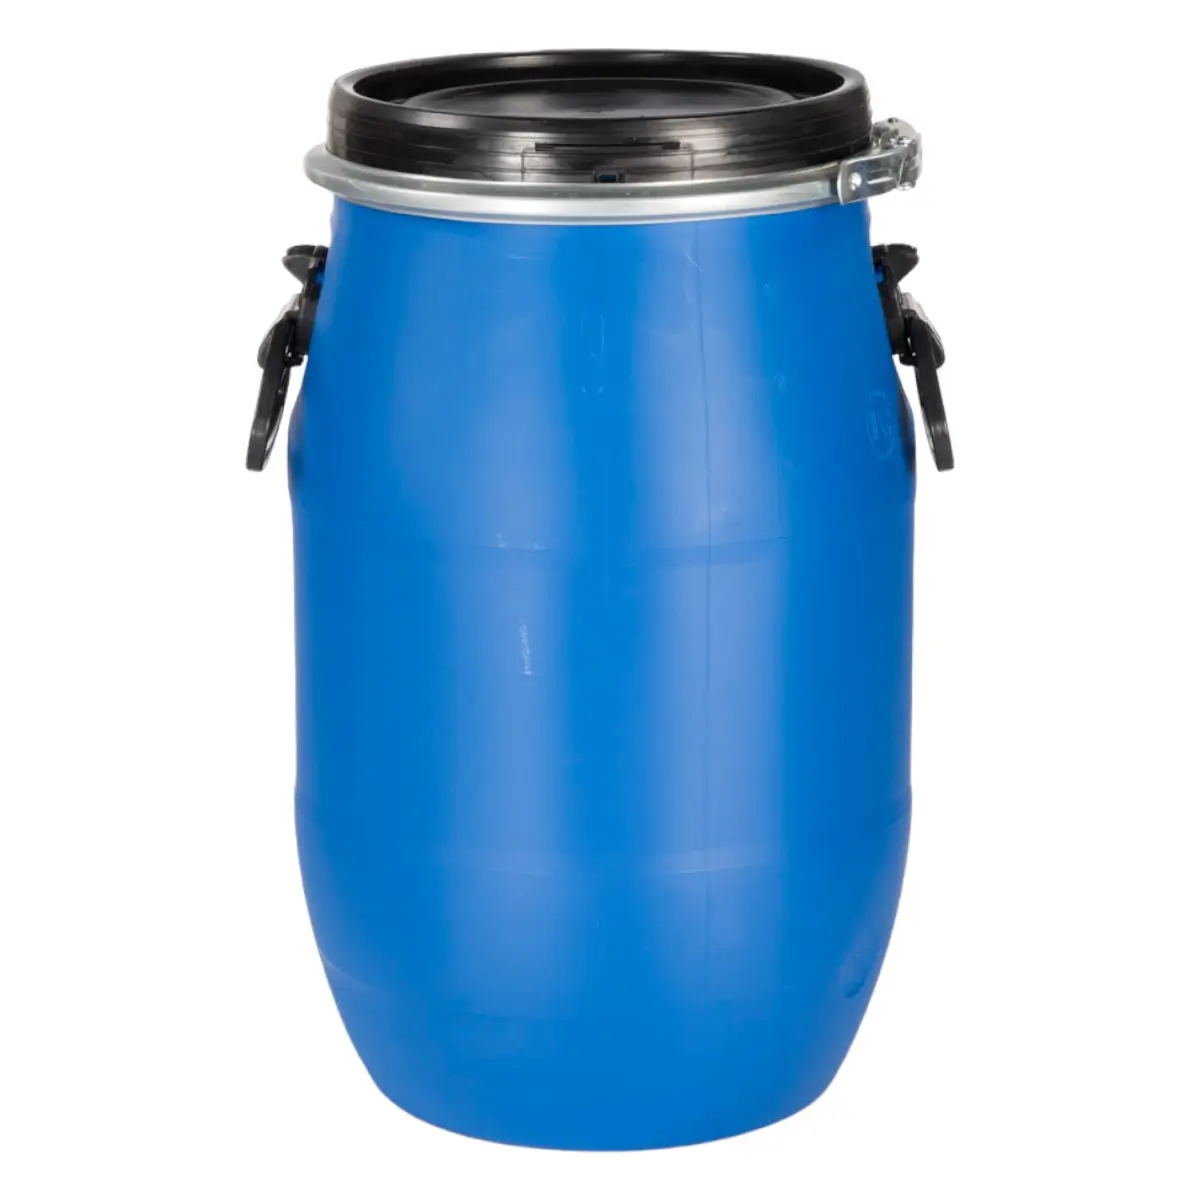 30 Liter Weithalsfass Kunststofffass Blau